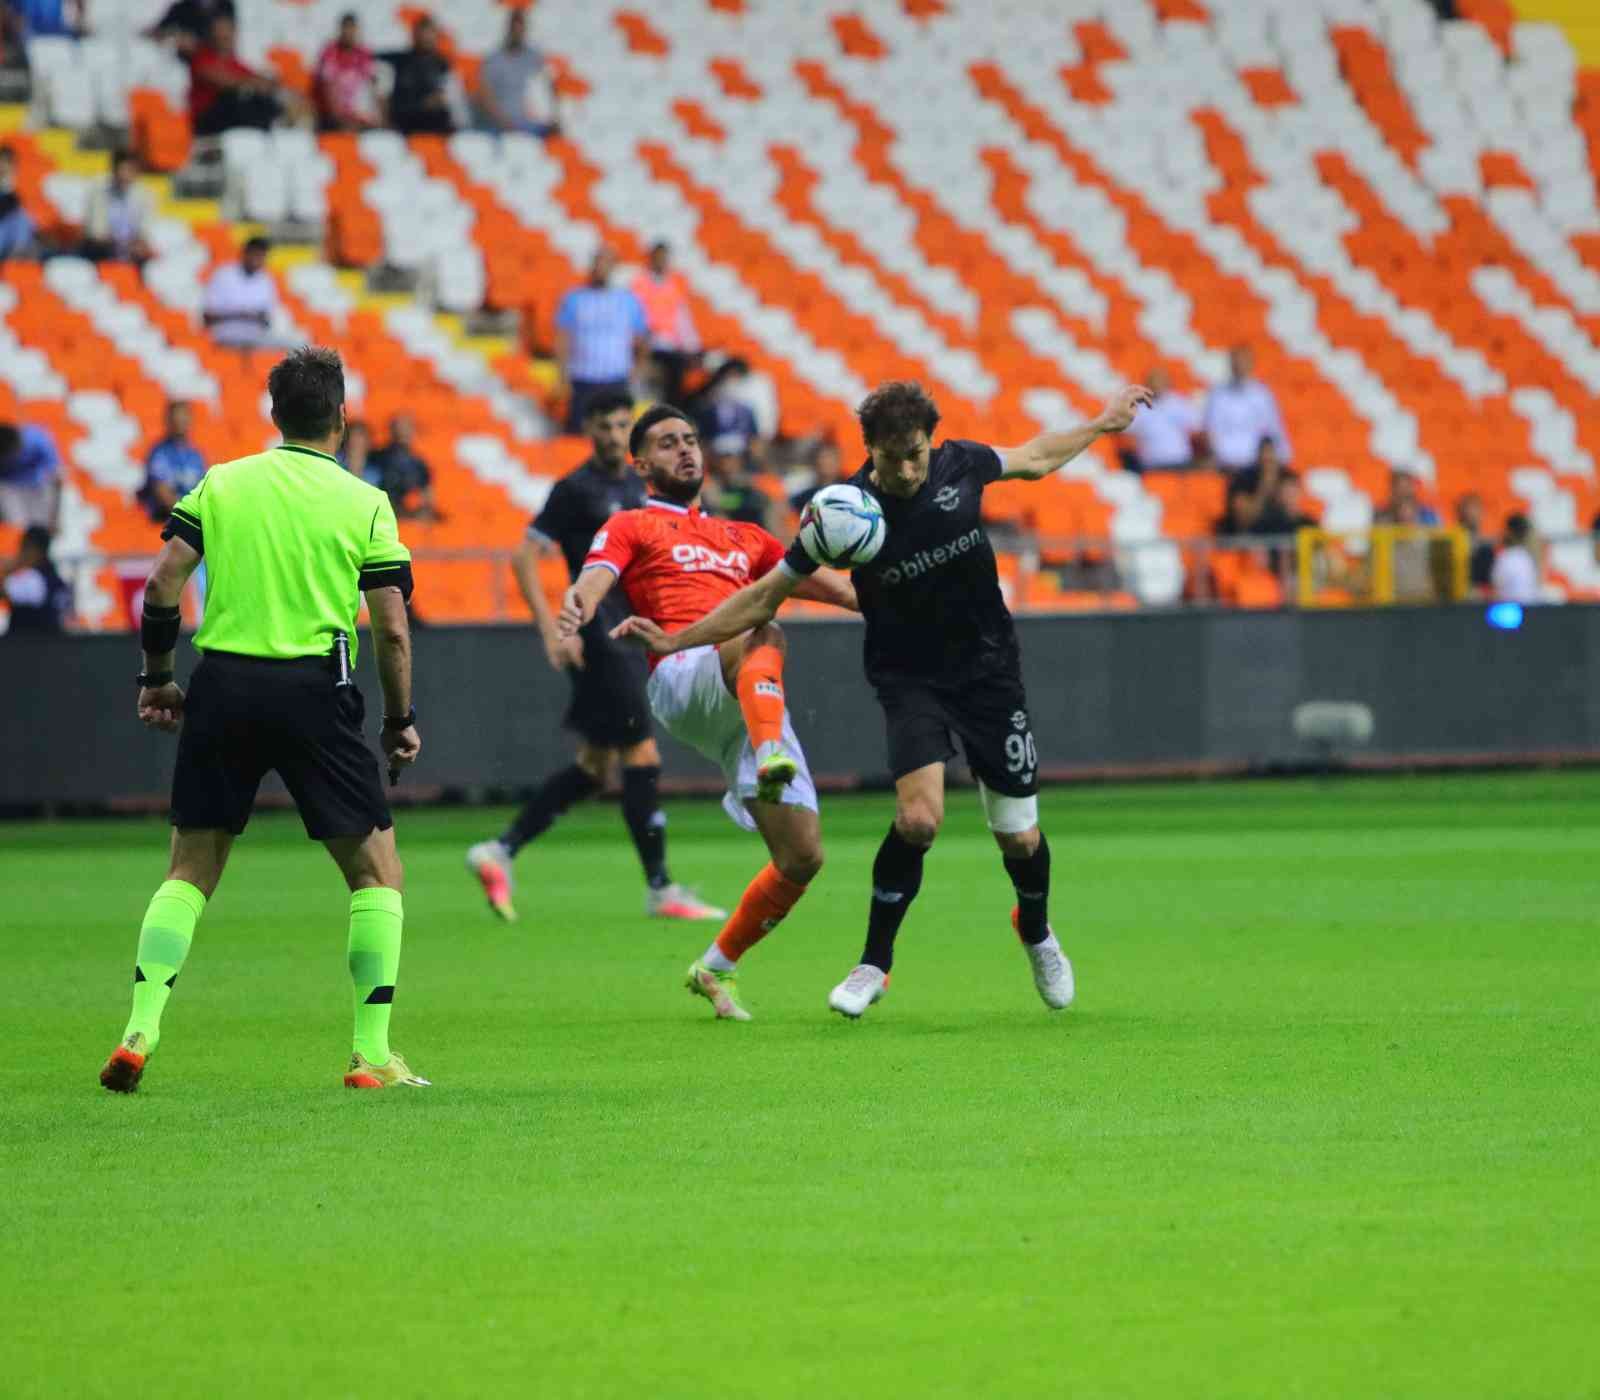 Süper Lig: Adana Demirspor: 0 - Yeni Malatyaspor: 0 (Maç devam ediyor) #adana